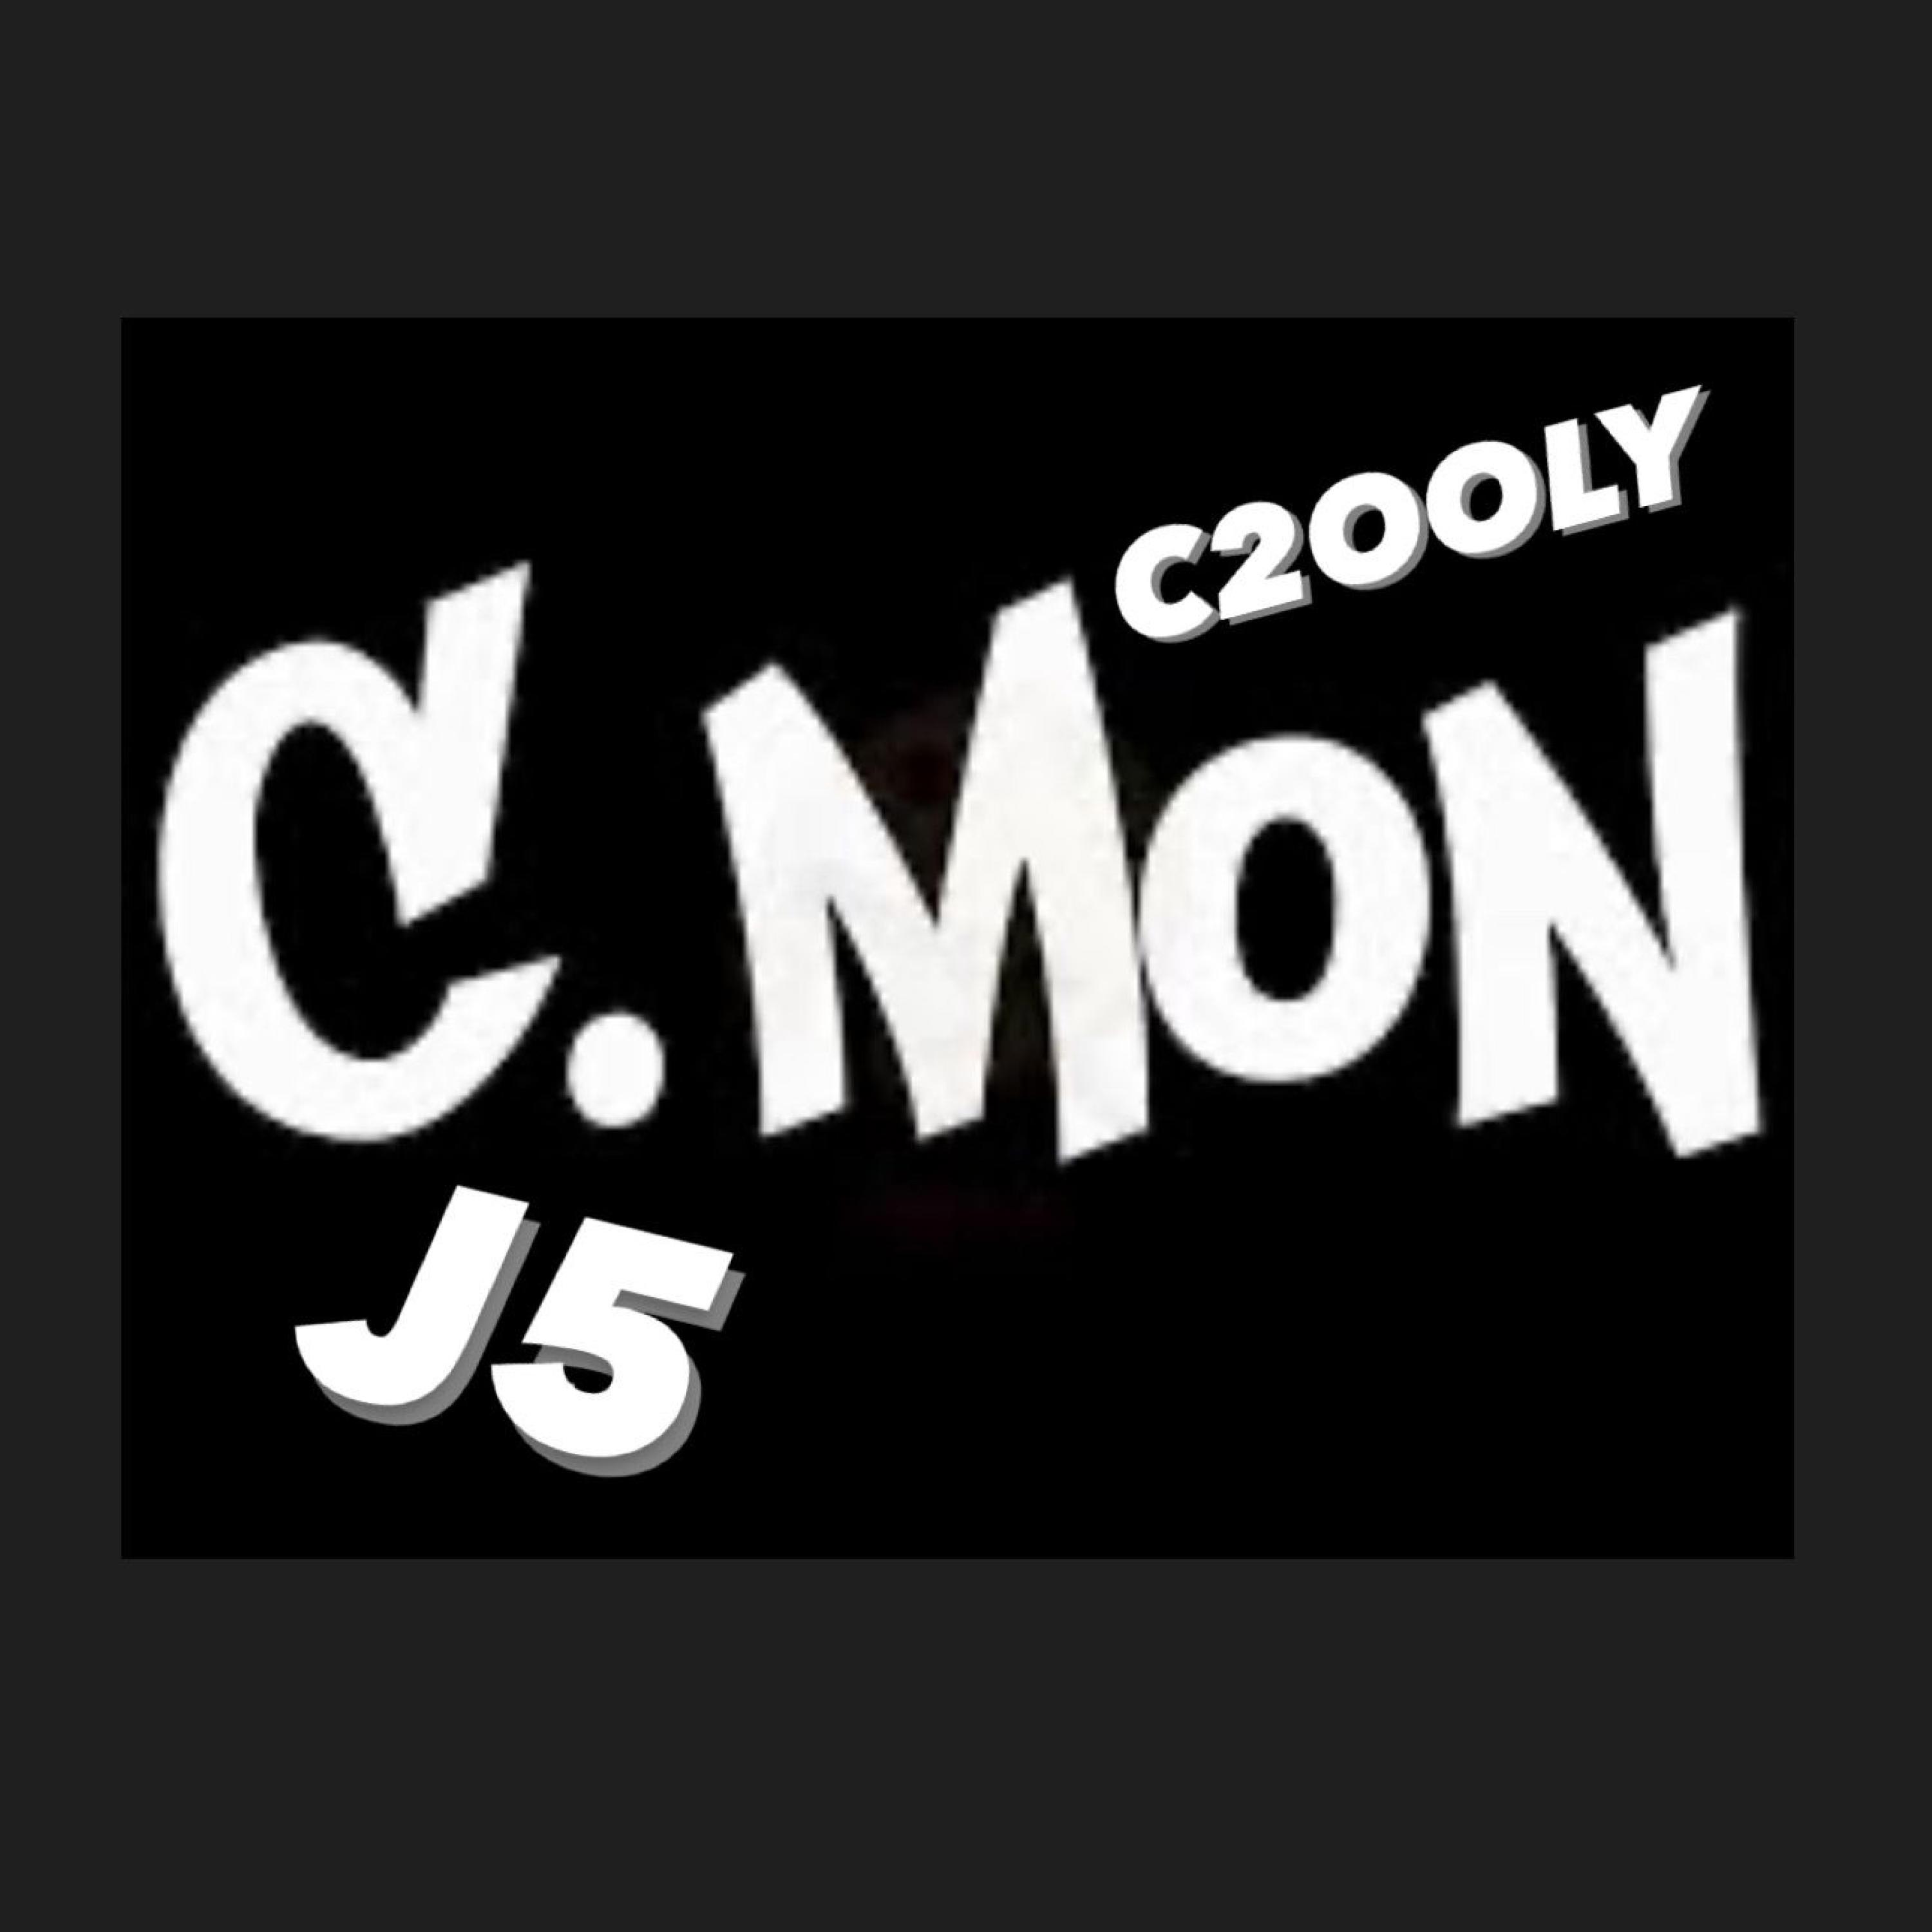 C2ooly - C'MON! (feat. J5)